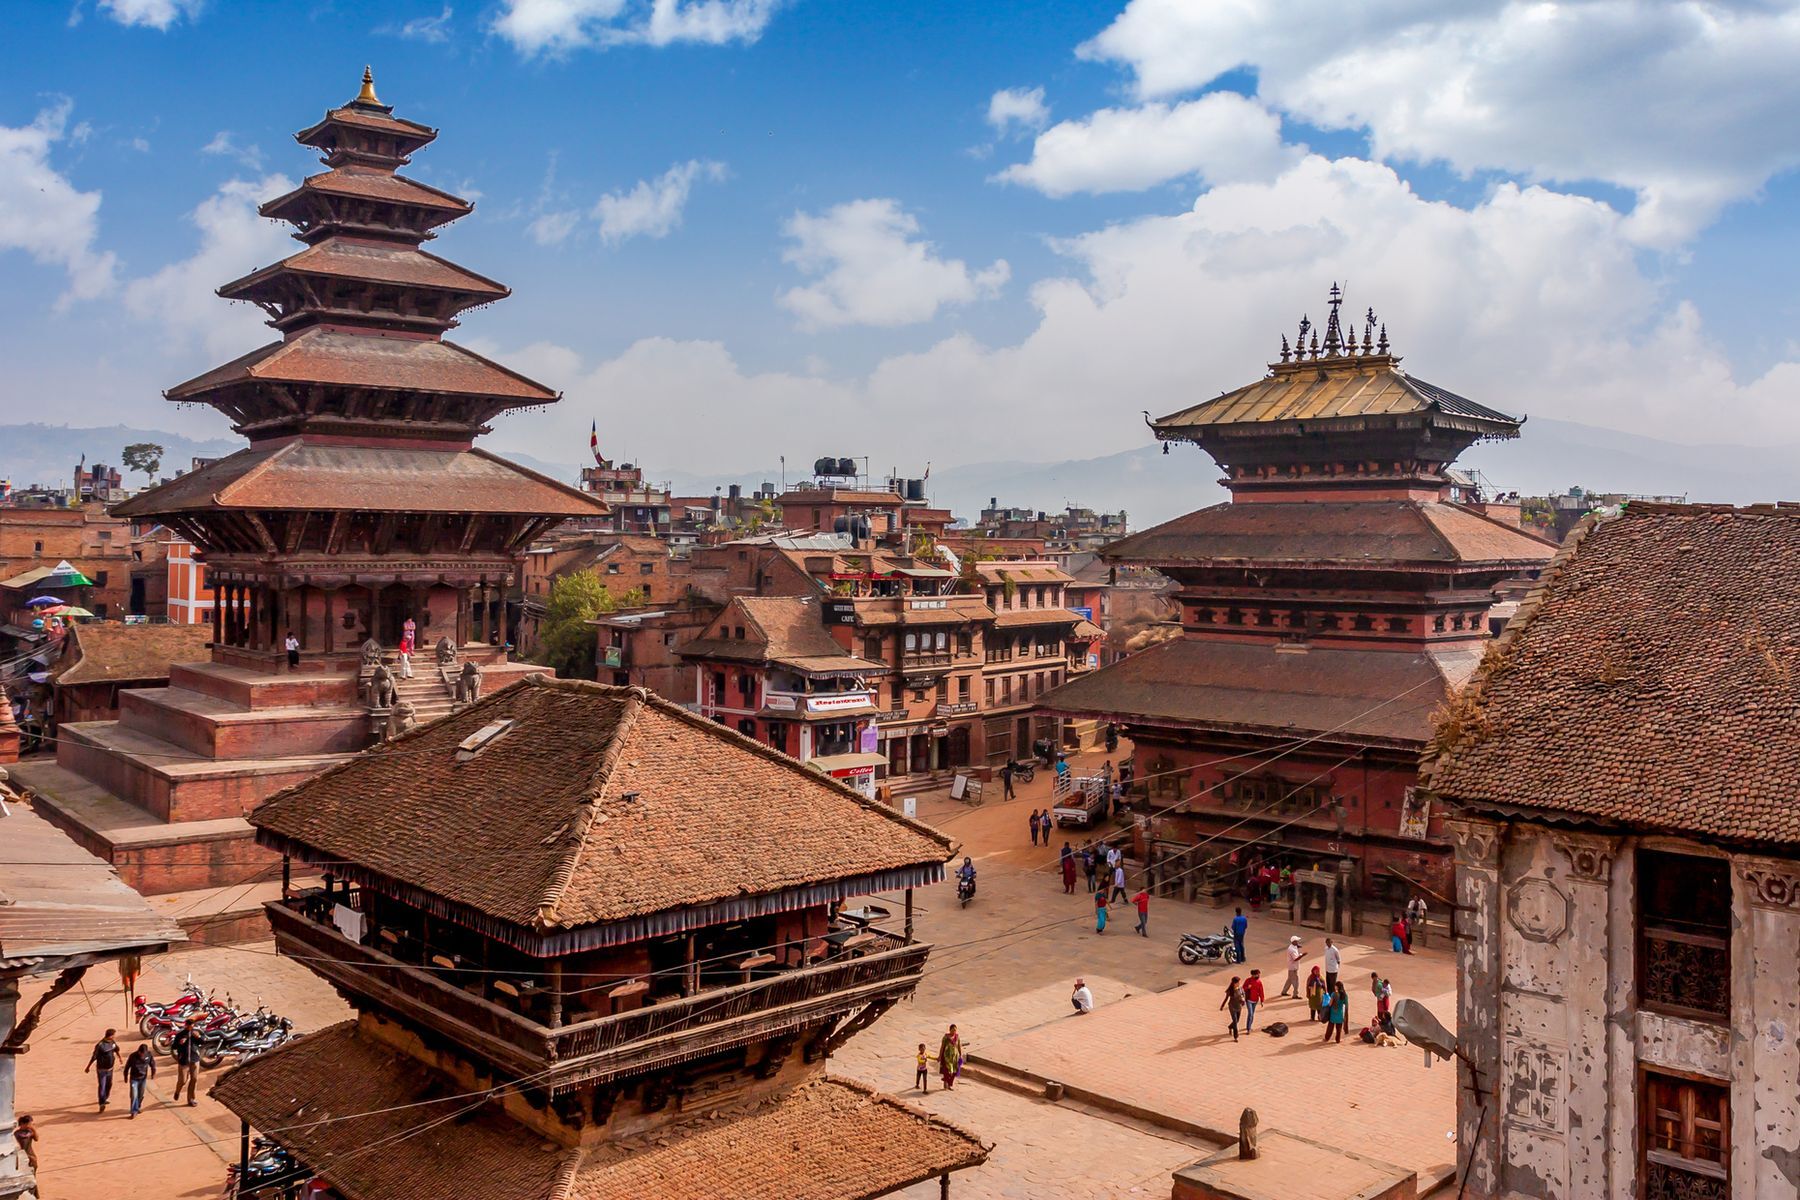 <p>Située dans une vallée bordée par les montagnes de l’Himalaya, la ville de Katmandou est le centre historique, culturel et économique du Népal. Le coût de la vie y est environ <a href="https://www.combien-coute.net/cout-de-la-vie/nepal/katmandou/">60% moins </a><a href="https://www.combien-coute.net/cout-de-la-vie/nepal/katmandou/">élevé</a> qu’en France, et la région saura ravir les adeptes de randonnée, activité peu coûteuse s’il en est une. Ils pourront la pratiquer par exemple au <a href="https://dnpwc.gov.np/en/conservation-area-detail/76/">parc national de Langtang</a>, situé à moins de 100 kilomètres de Katmandou, qui est le deuxième plus grand du Népal et qui possède de nombreux sentiers. Les touristes qui préfèrent la ville apprécieront la visite du <a href="https://www.voyagetips.com/que-faire-a-katmandou/#2_Durbar_Square">Durbar Square</a>, où palais, temples et pagodes sont présents en grand nombre.</p>